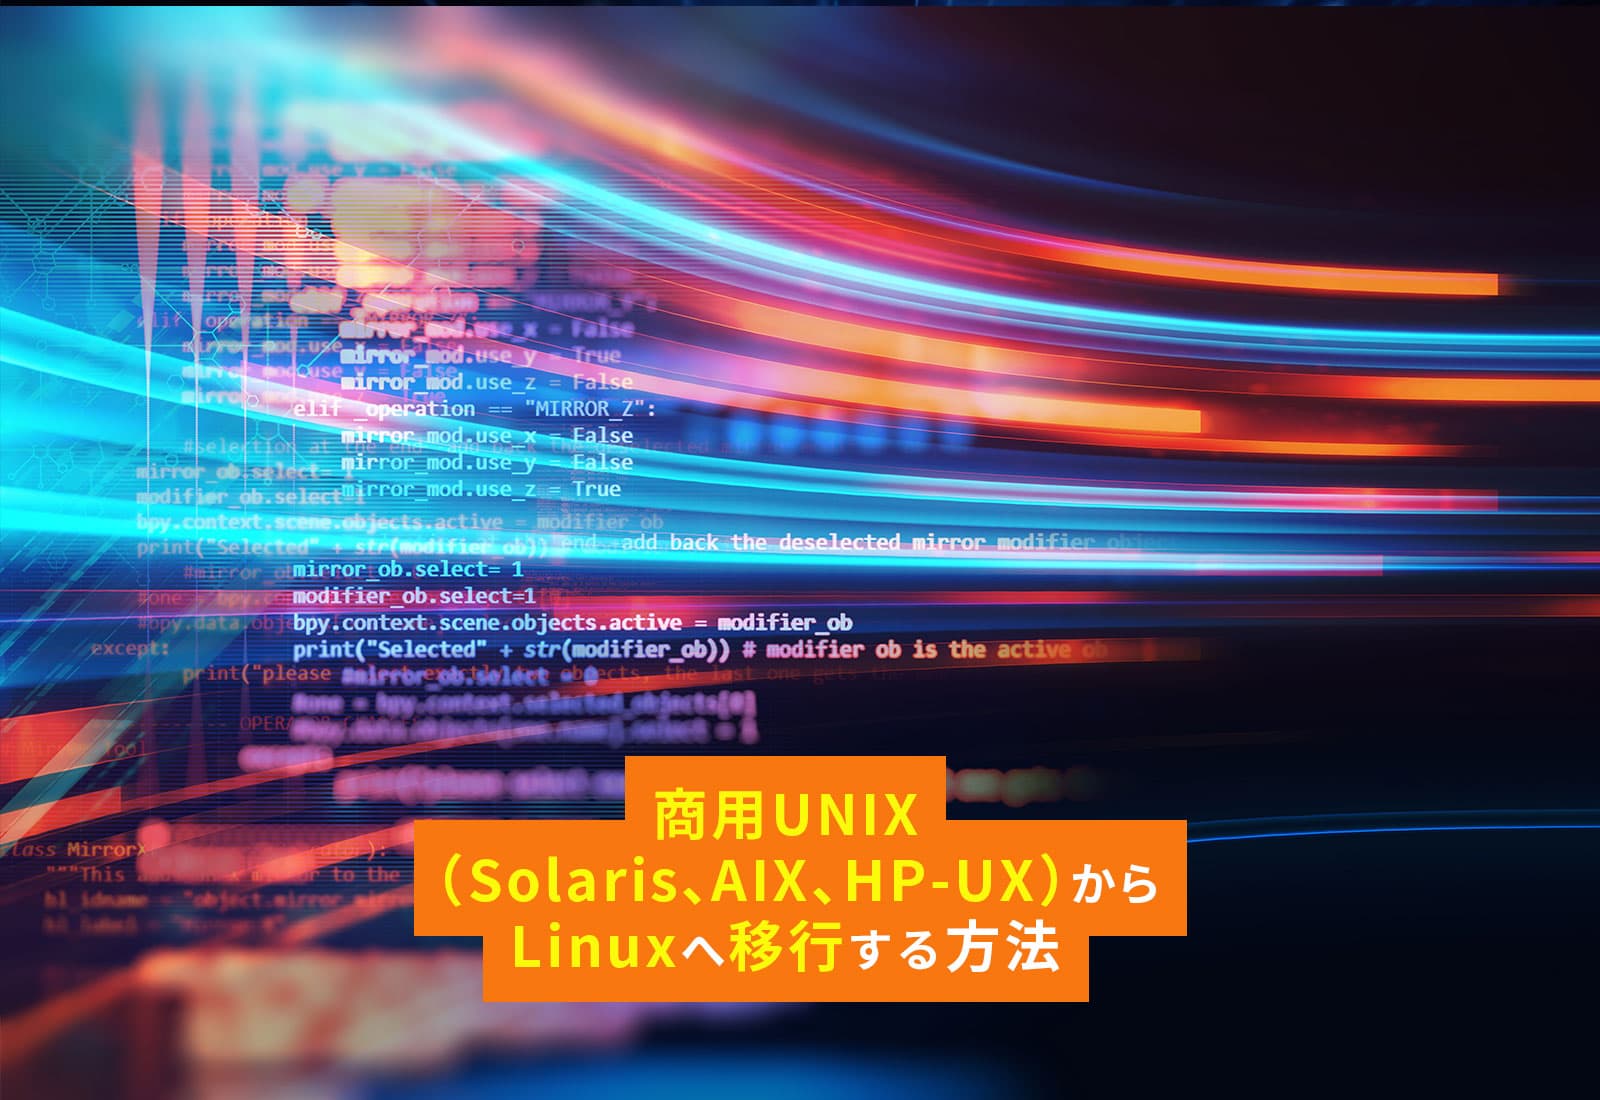 商用UNIX（Solaris、AIX、HP-UX）からLinuxへ移行する方法